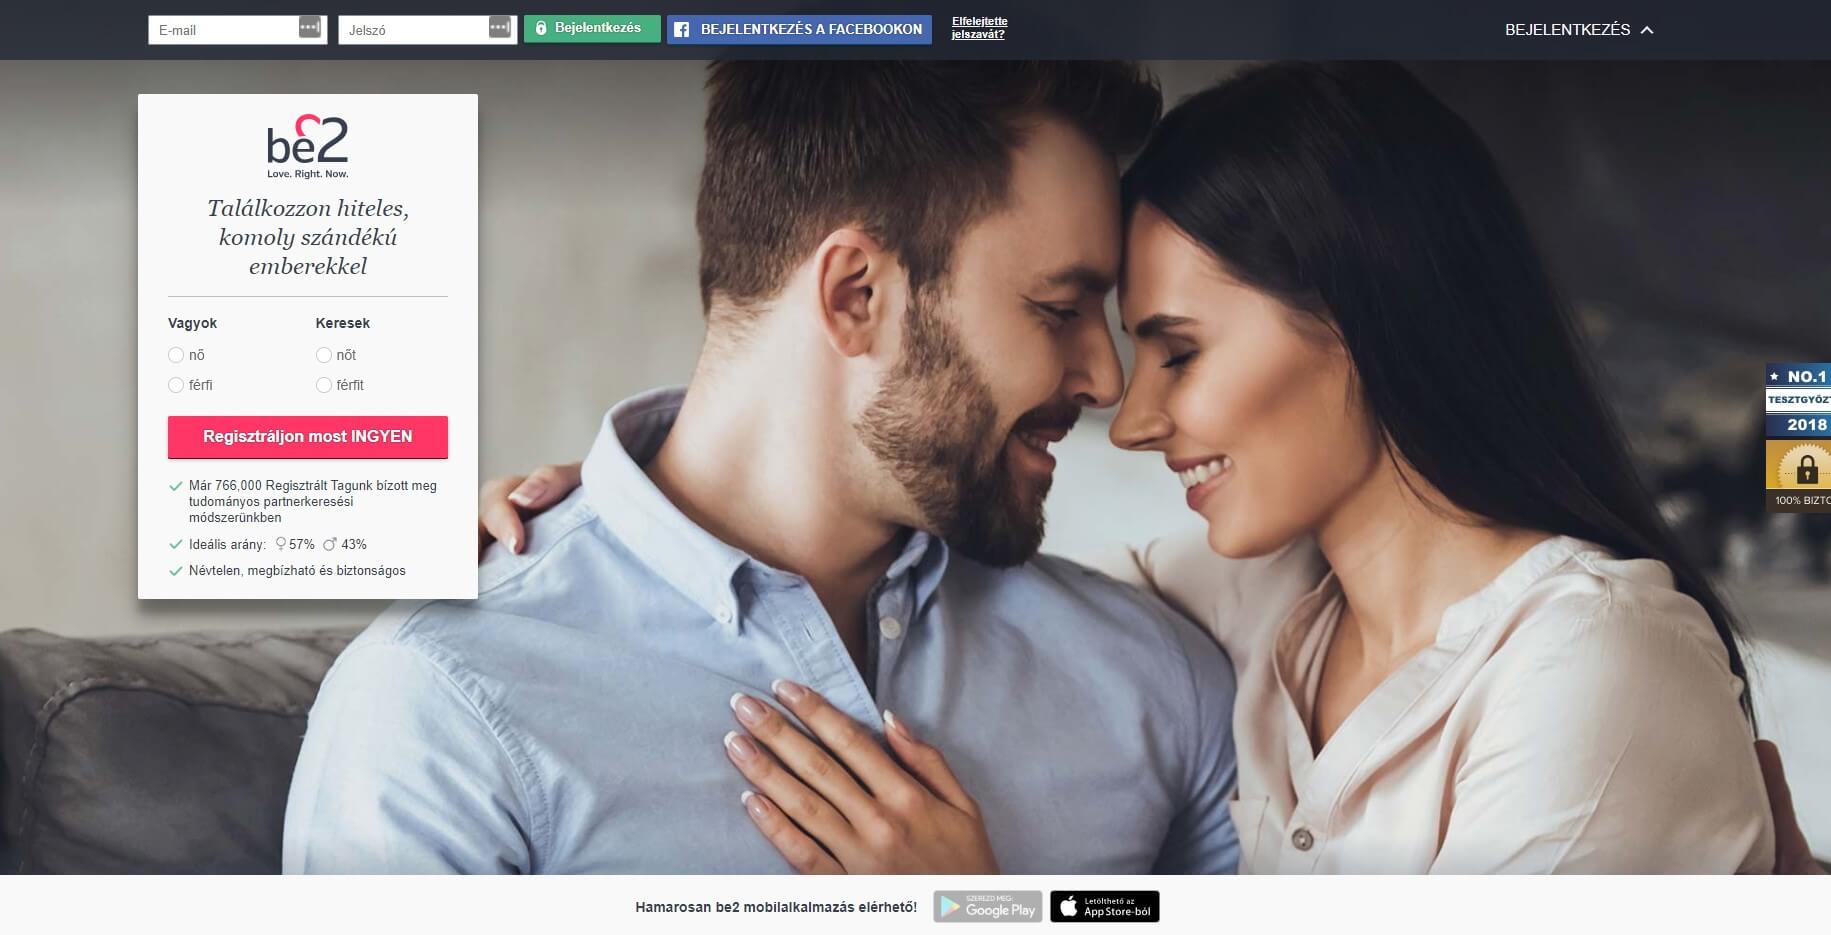 ingyenes társkereső webhely platform ingyenes 50 éves randevúk